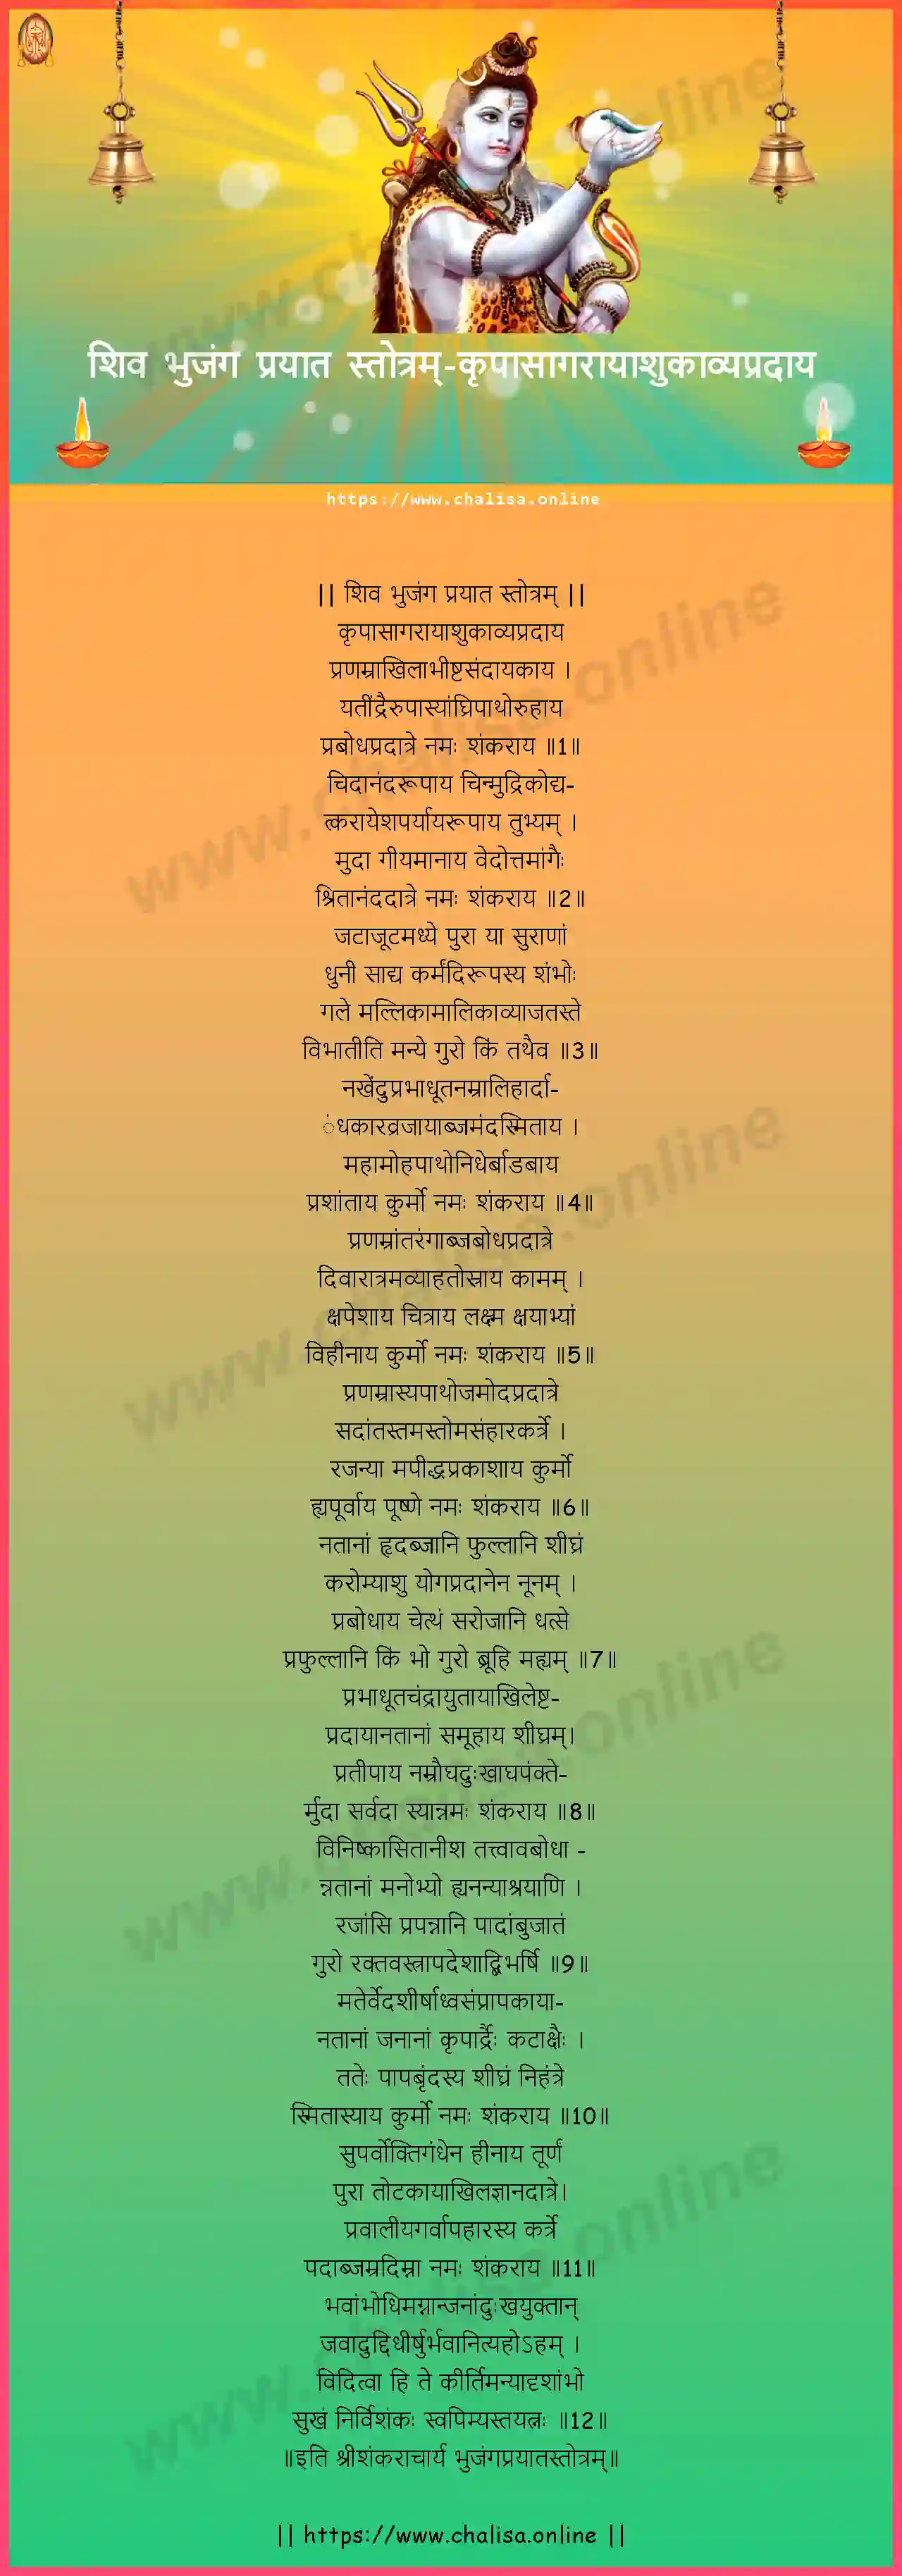 krpasagarayasukavyapradaya-shiva-bhujanga-prayata-stotram-konkani-konkani-lyrics-download